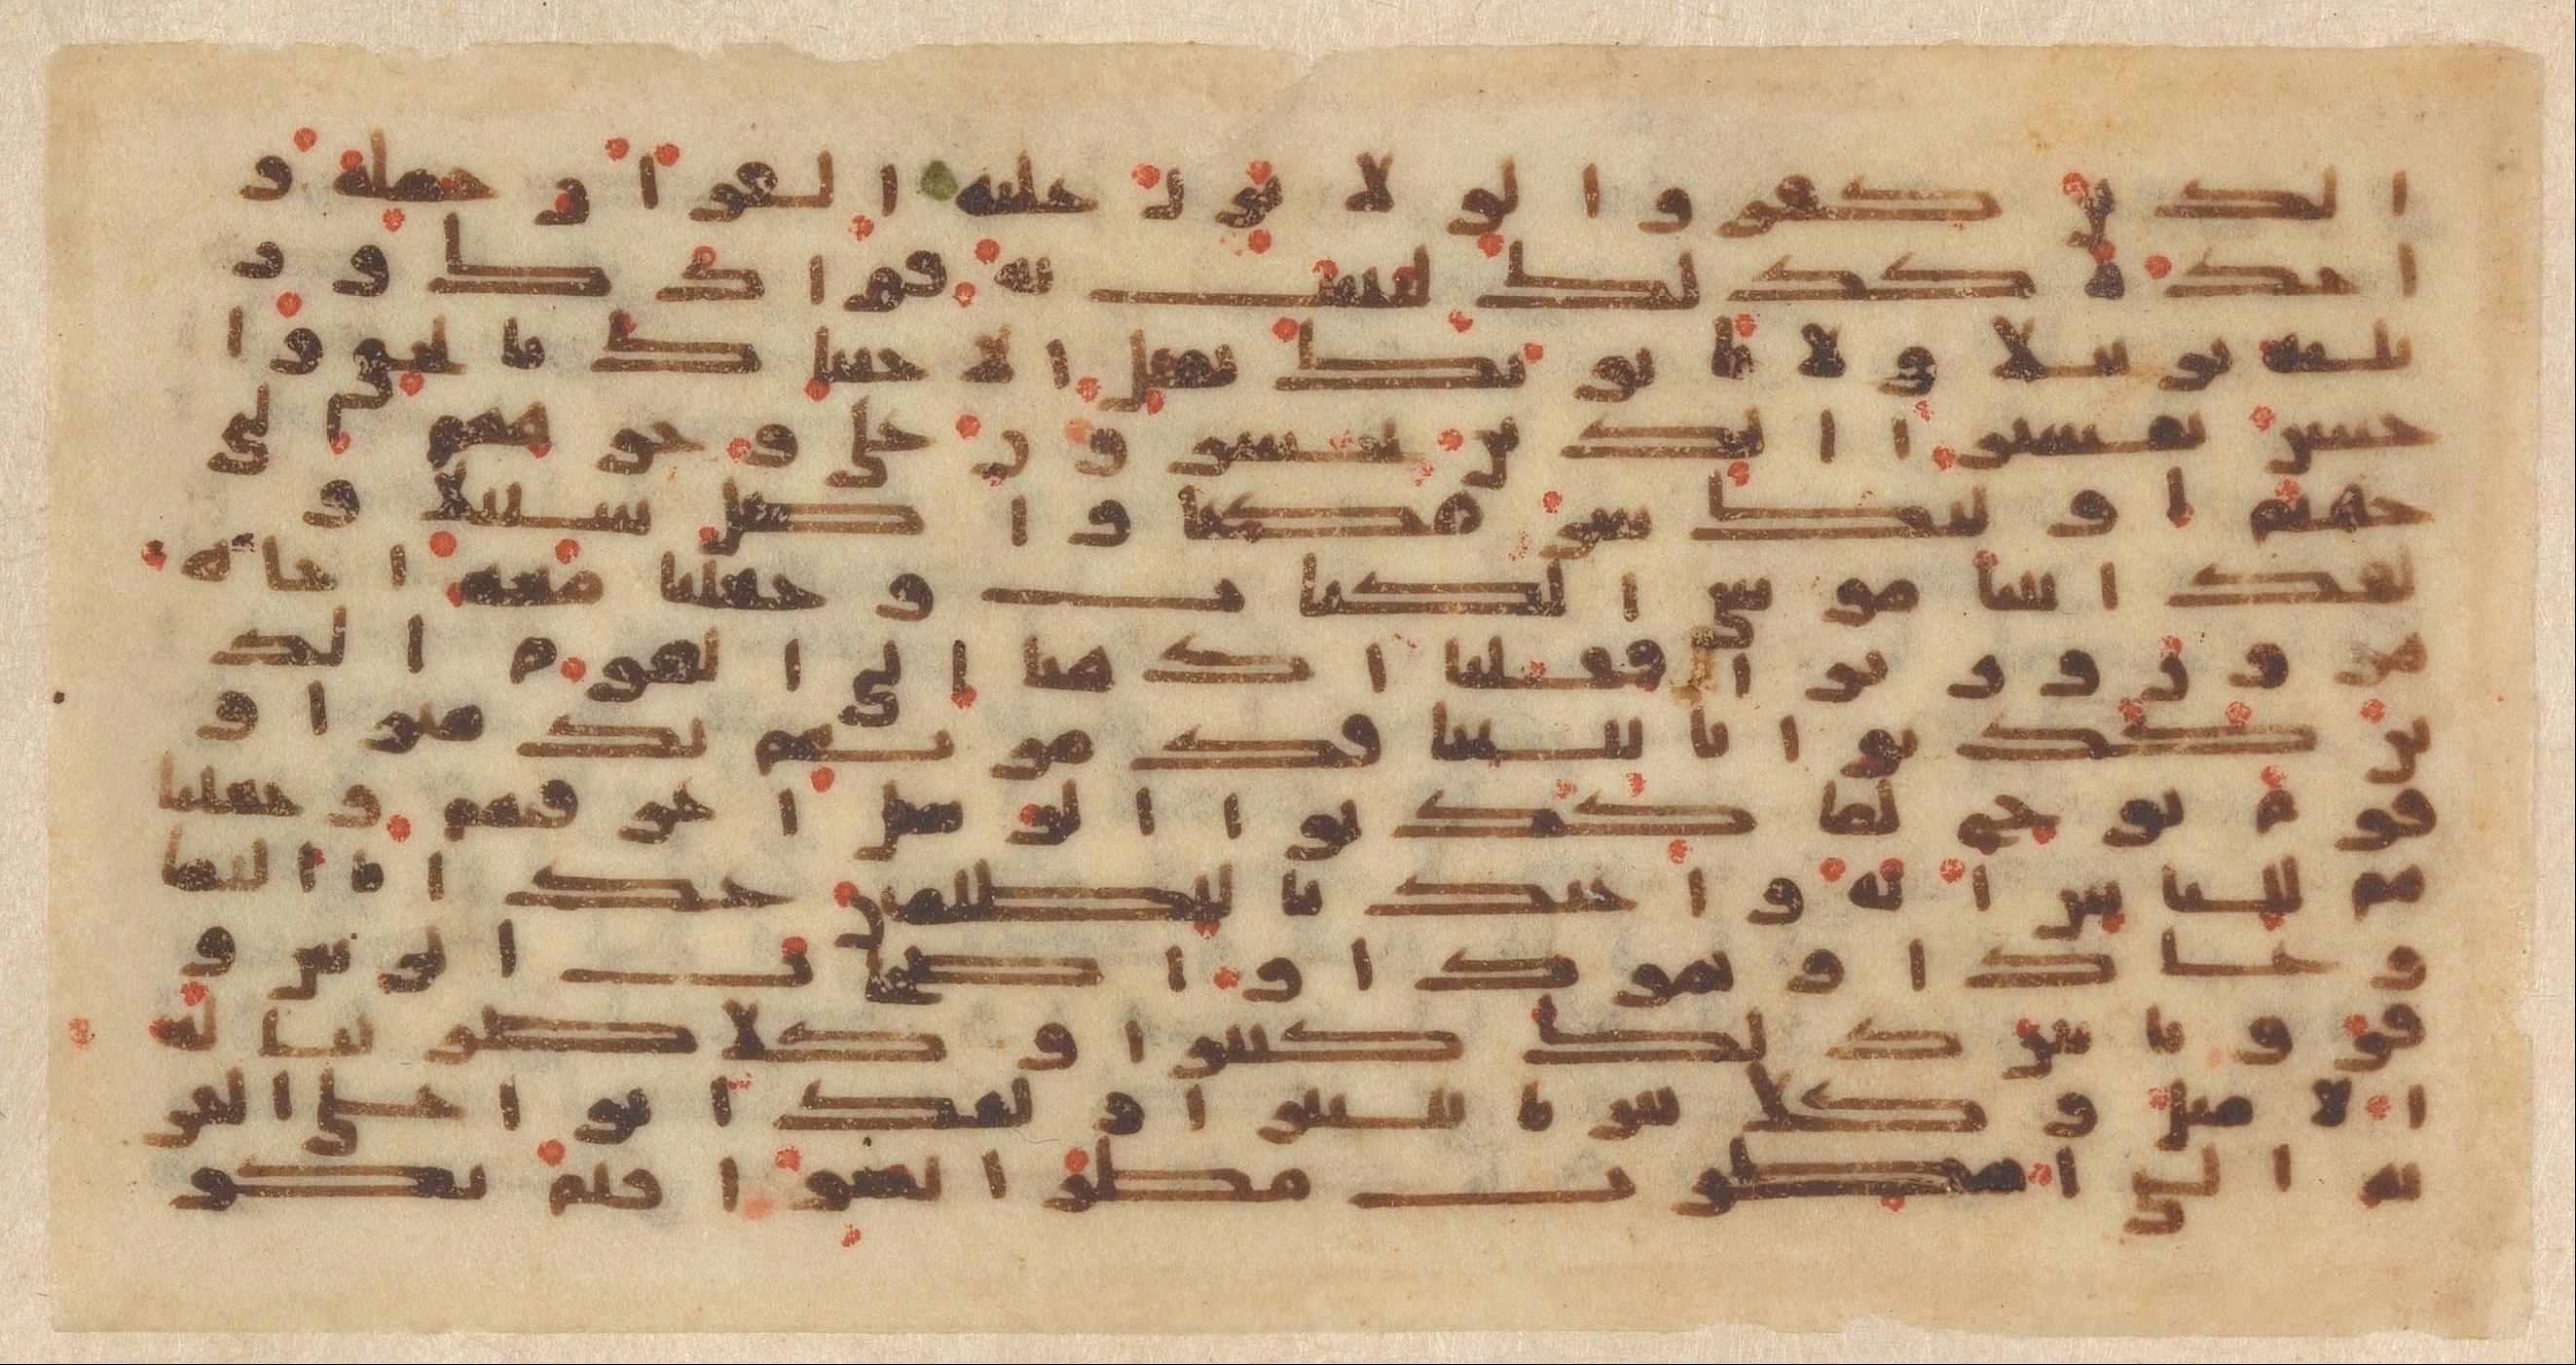 クーフィー体で書かれたコーラン、9世紀